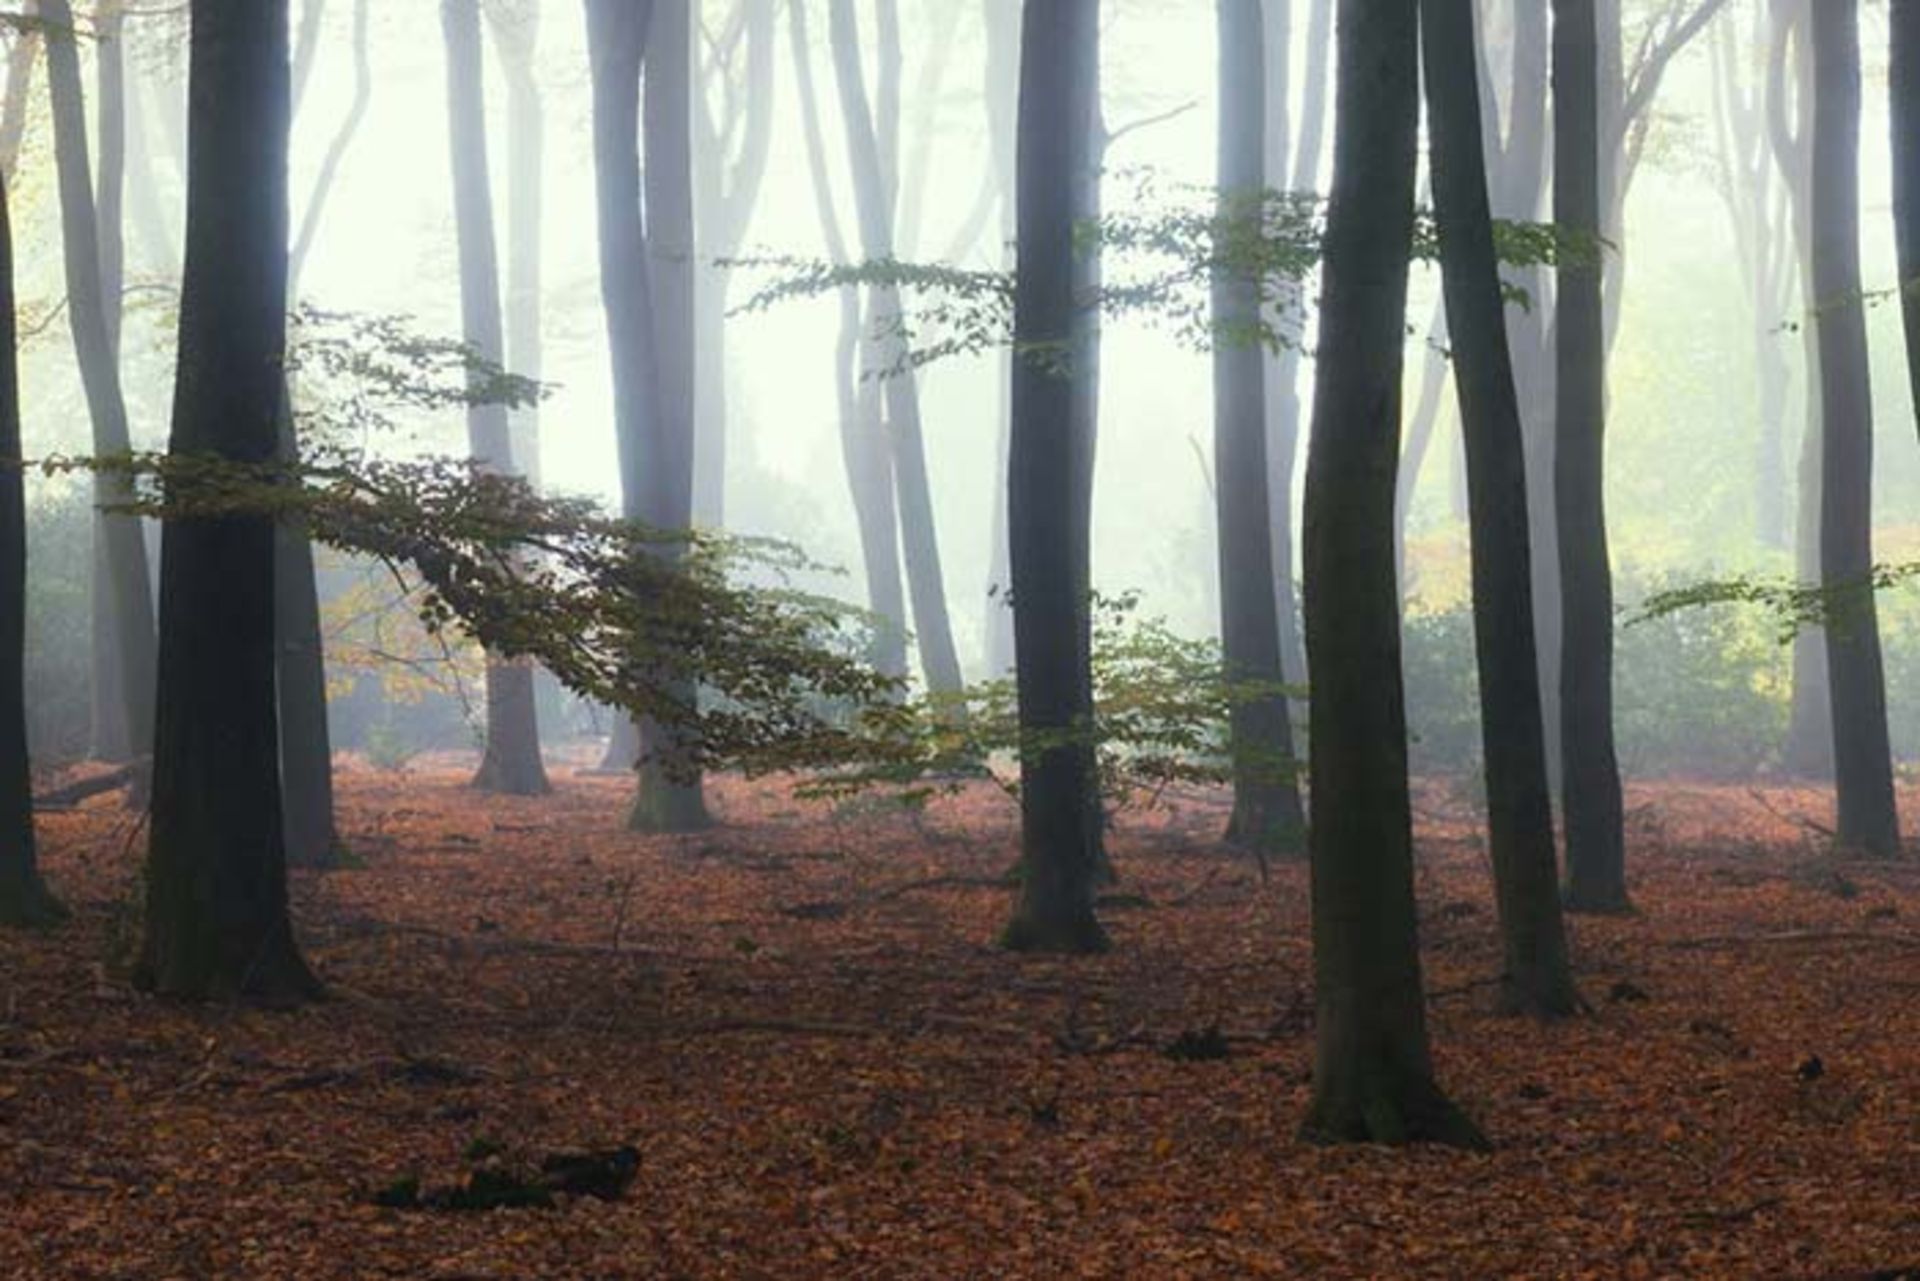 مرجع متخصصين ايران عكاسي از جنگلهاي كشور هلند